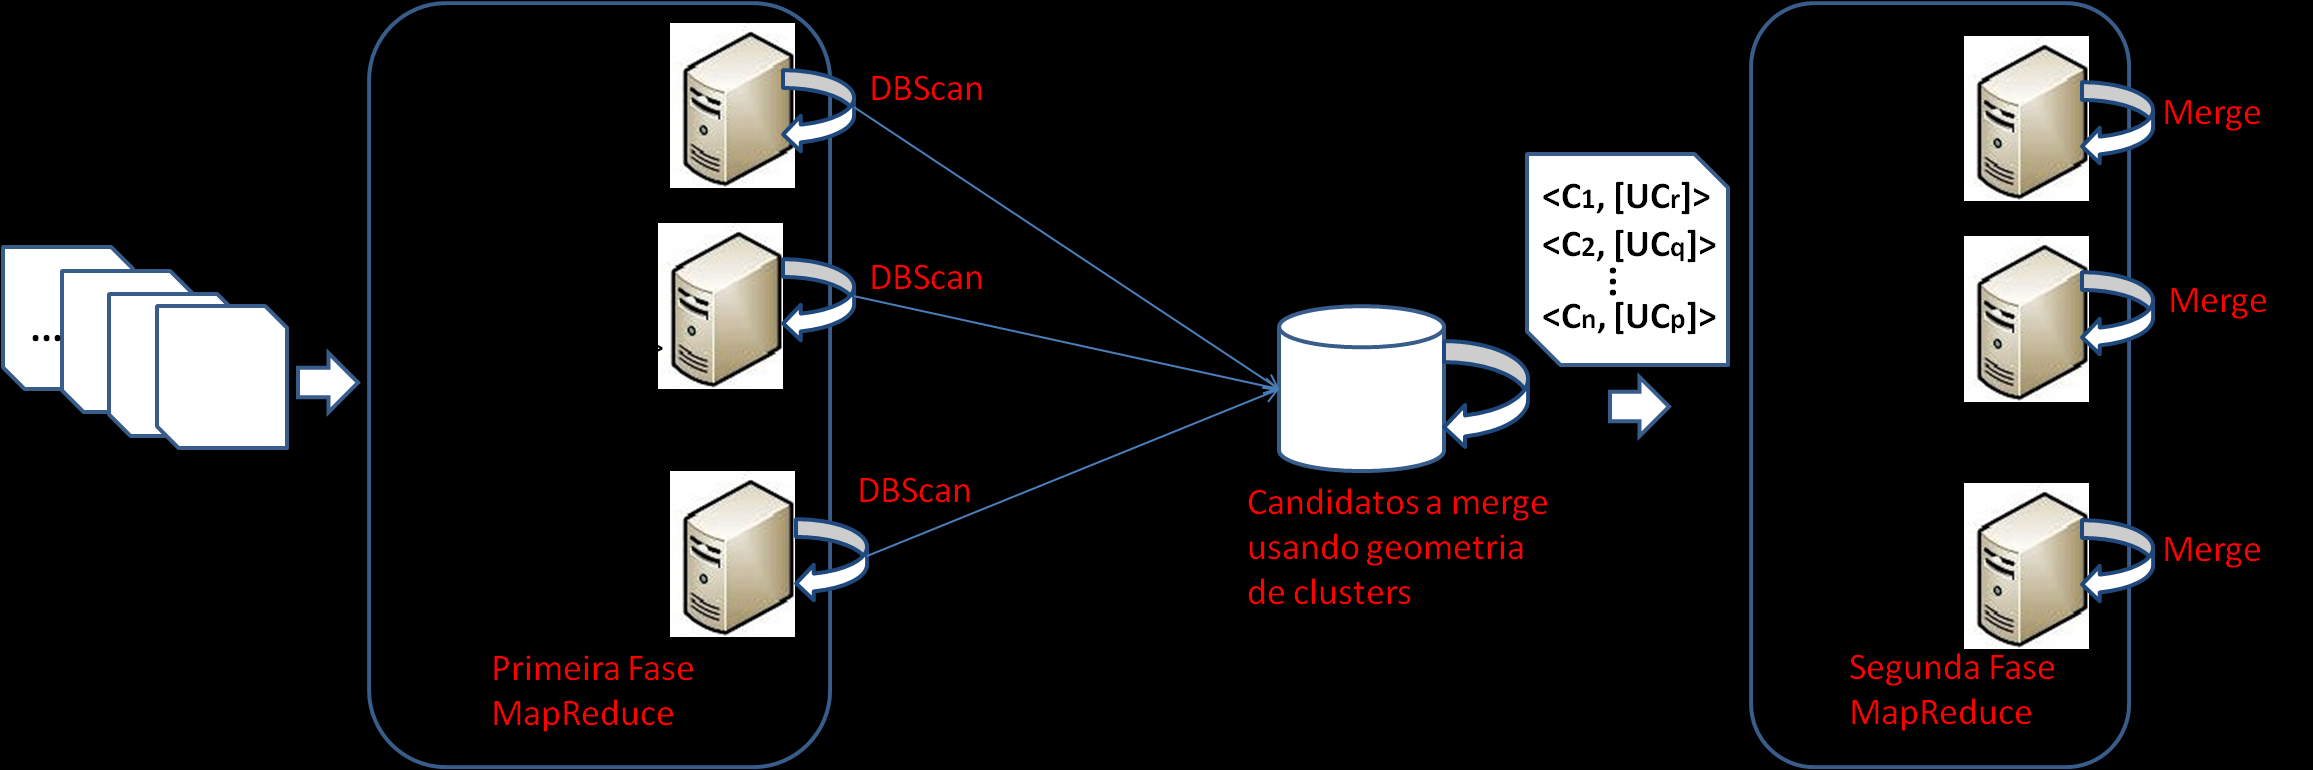 94 Algoritmo DBScan para Big Data Cada cluster é armazenado como um objeto geométrico no banco de dados; Objetos que estão a uma distância